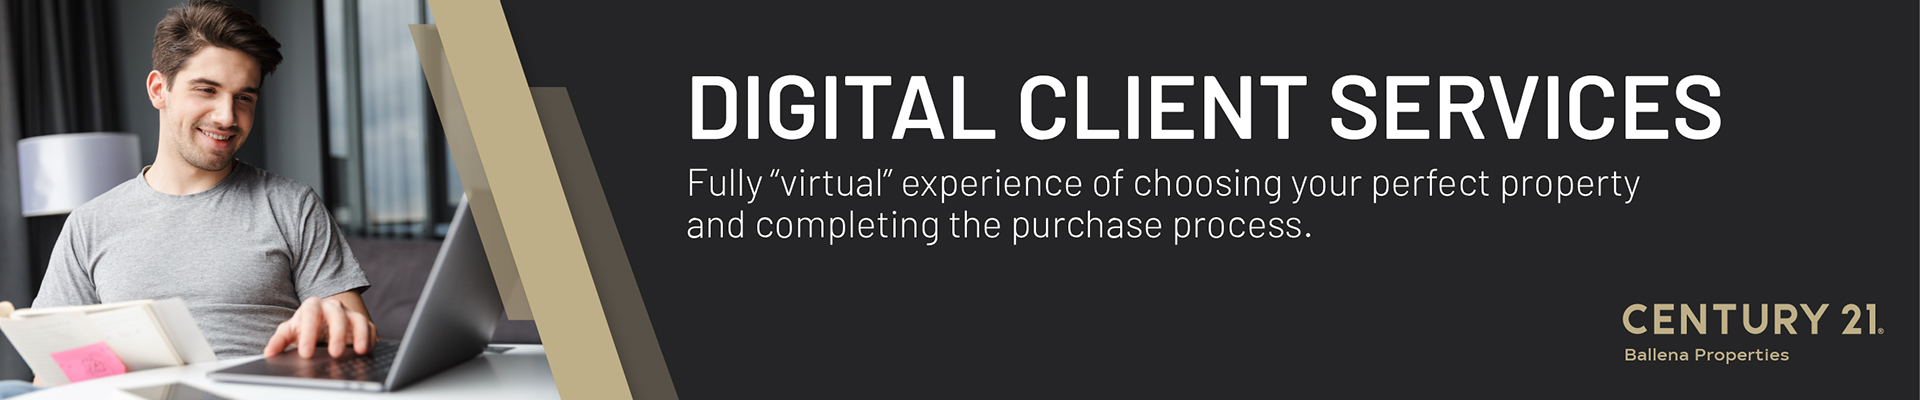 Digital Client Services